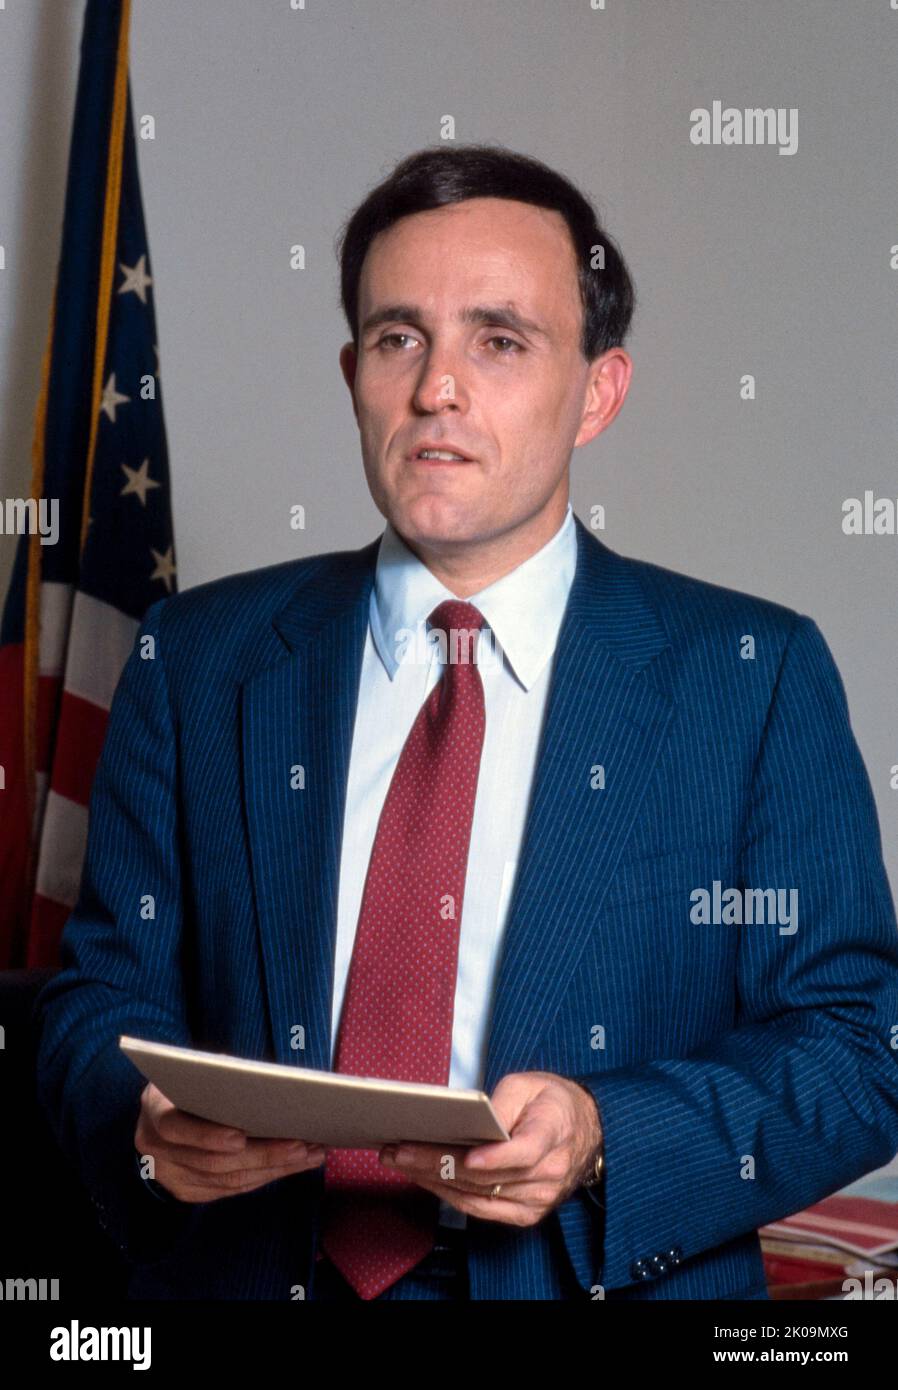 Rudolph Giuliani (nacido en 1944) Político y abogado estadounidense que sirvió como 107th Alcalde de la Ciudad de Nueva York de 1994 a 2001. Anteriormente se desempeñó como Fiscal General Asociado de los Estados Unidos de 1981 a 1983 y como Fiscal Federal para el Distrito Sur de Nueva York de 1983 a 1989. Foto de stock